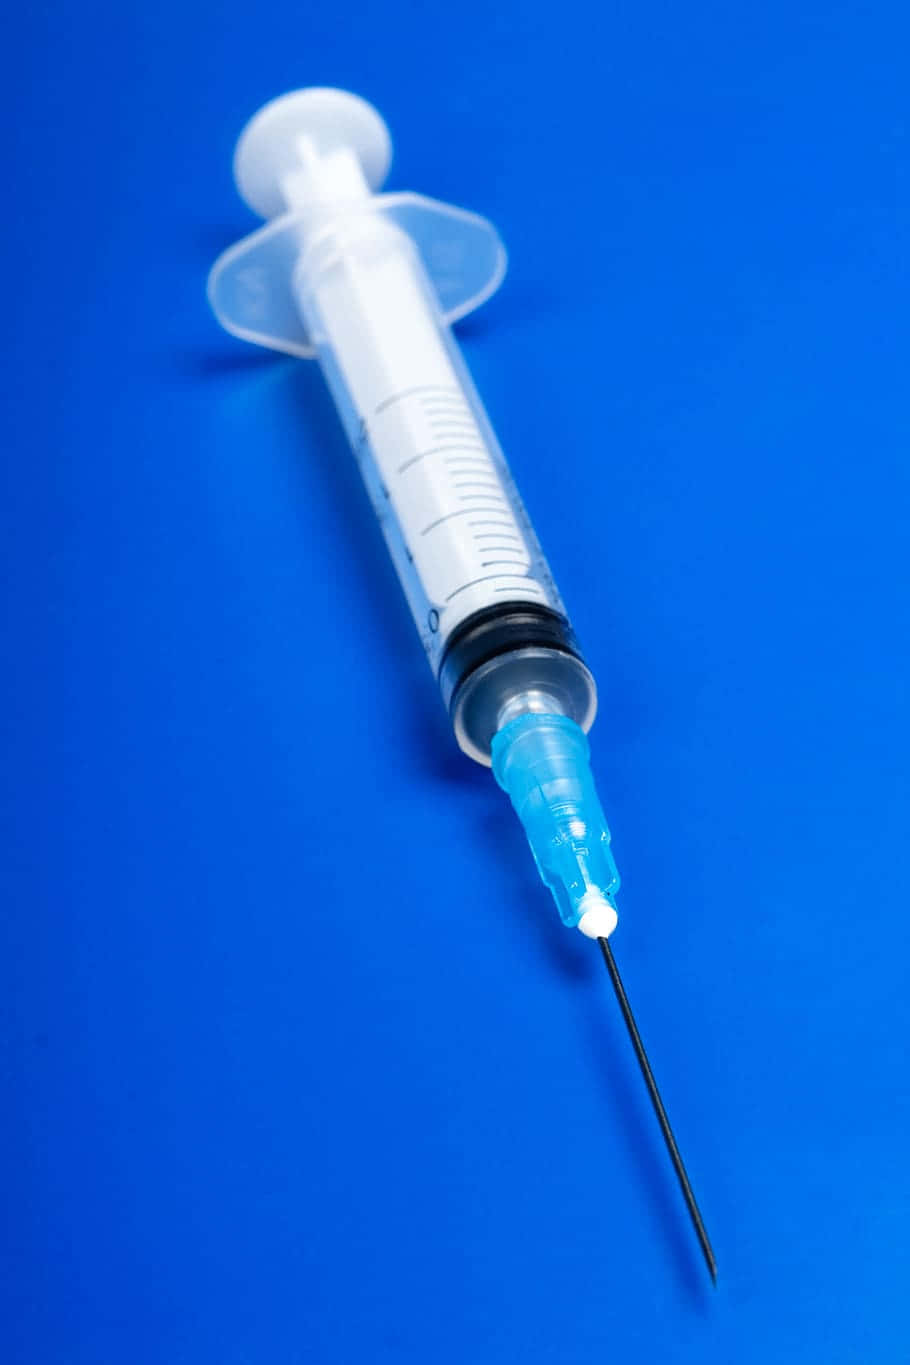 Hd Medical Syringe On Blue Background